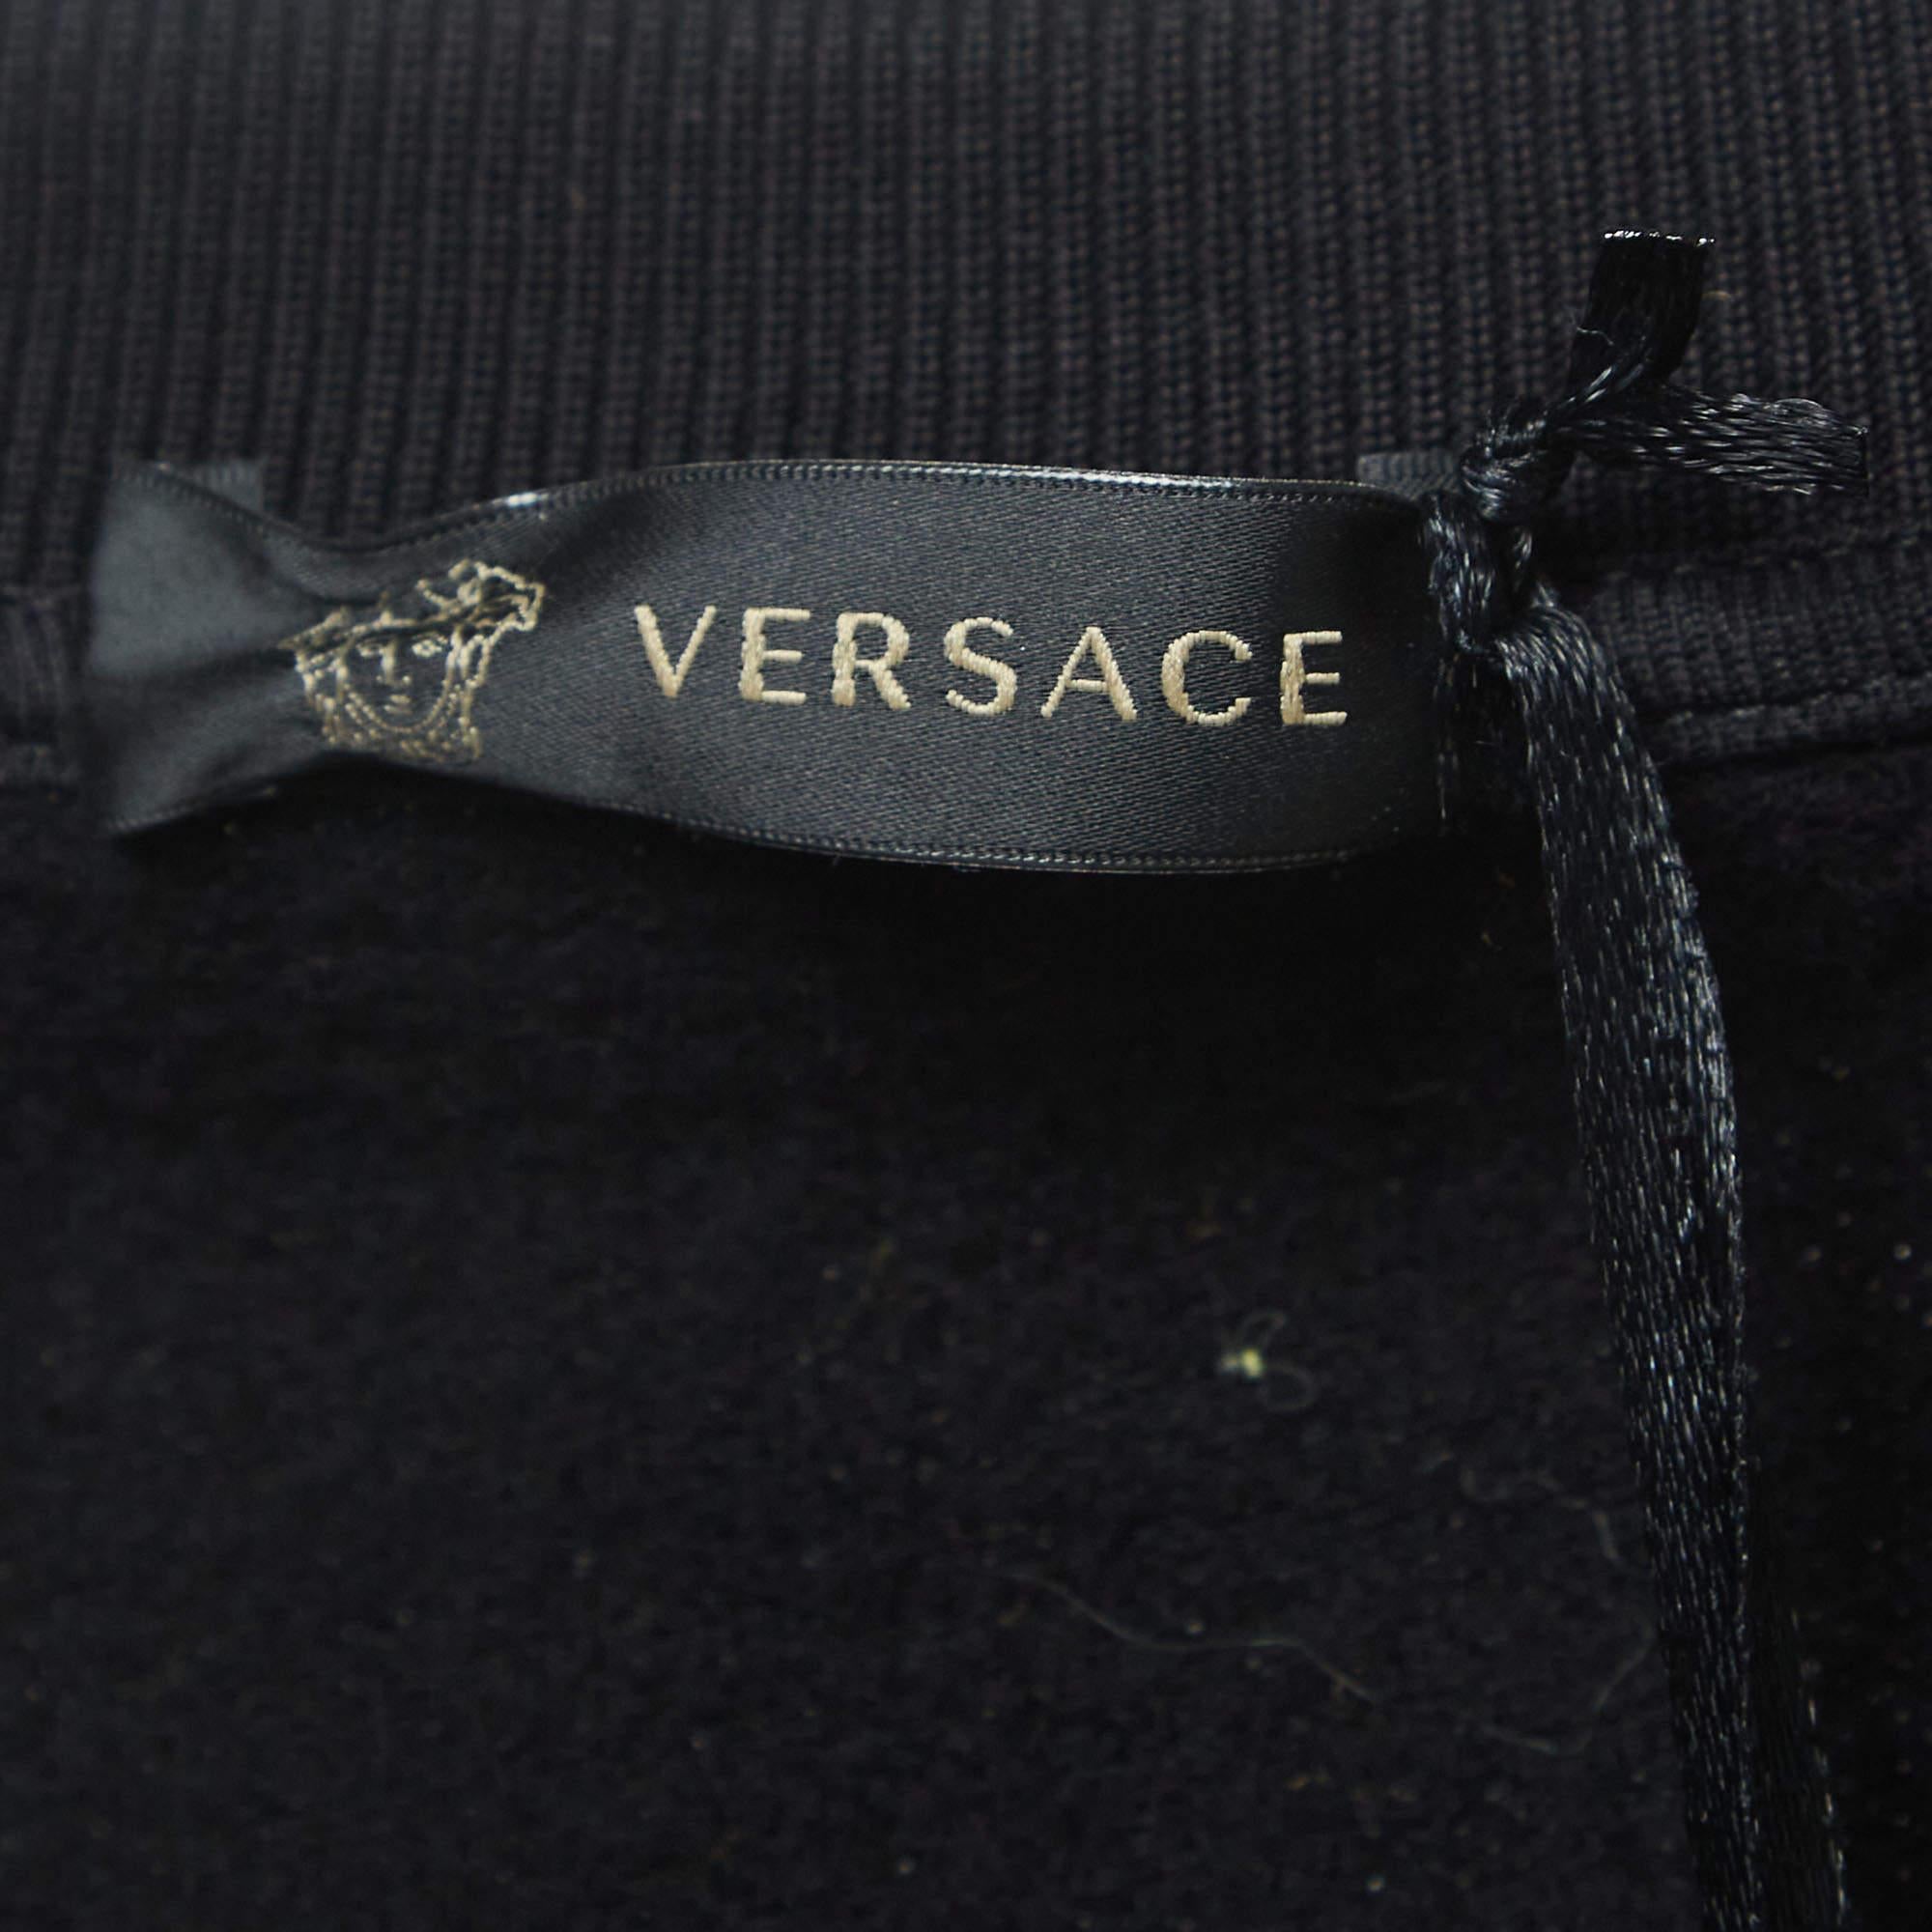 Versace Pillow Talk Black Leopard Print Applique Cotton Sweatshirt L 2